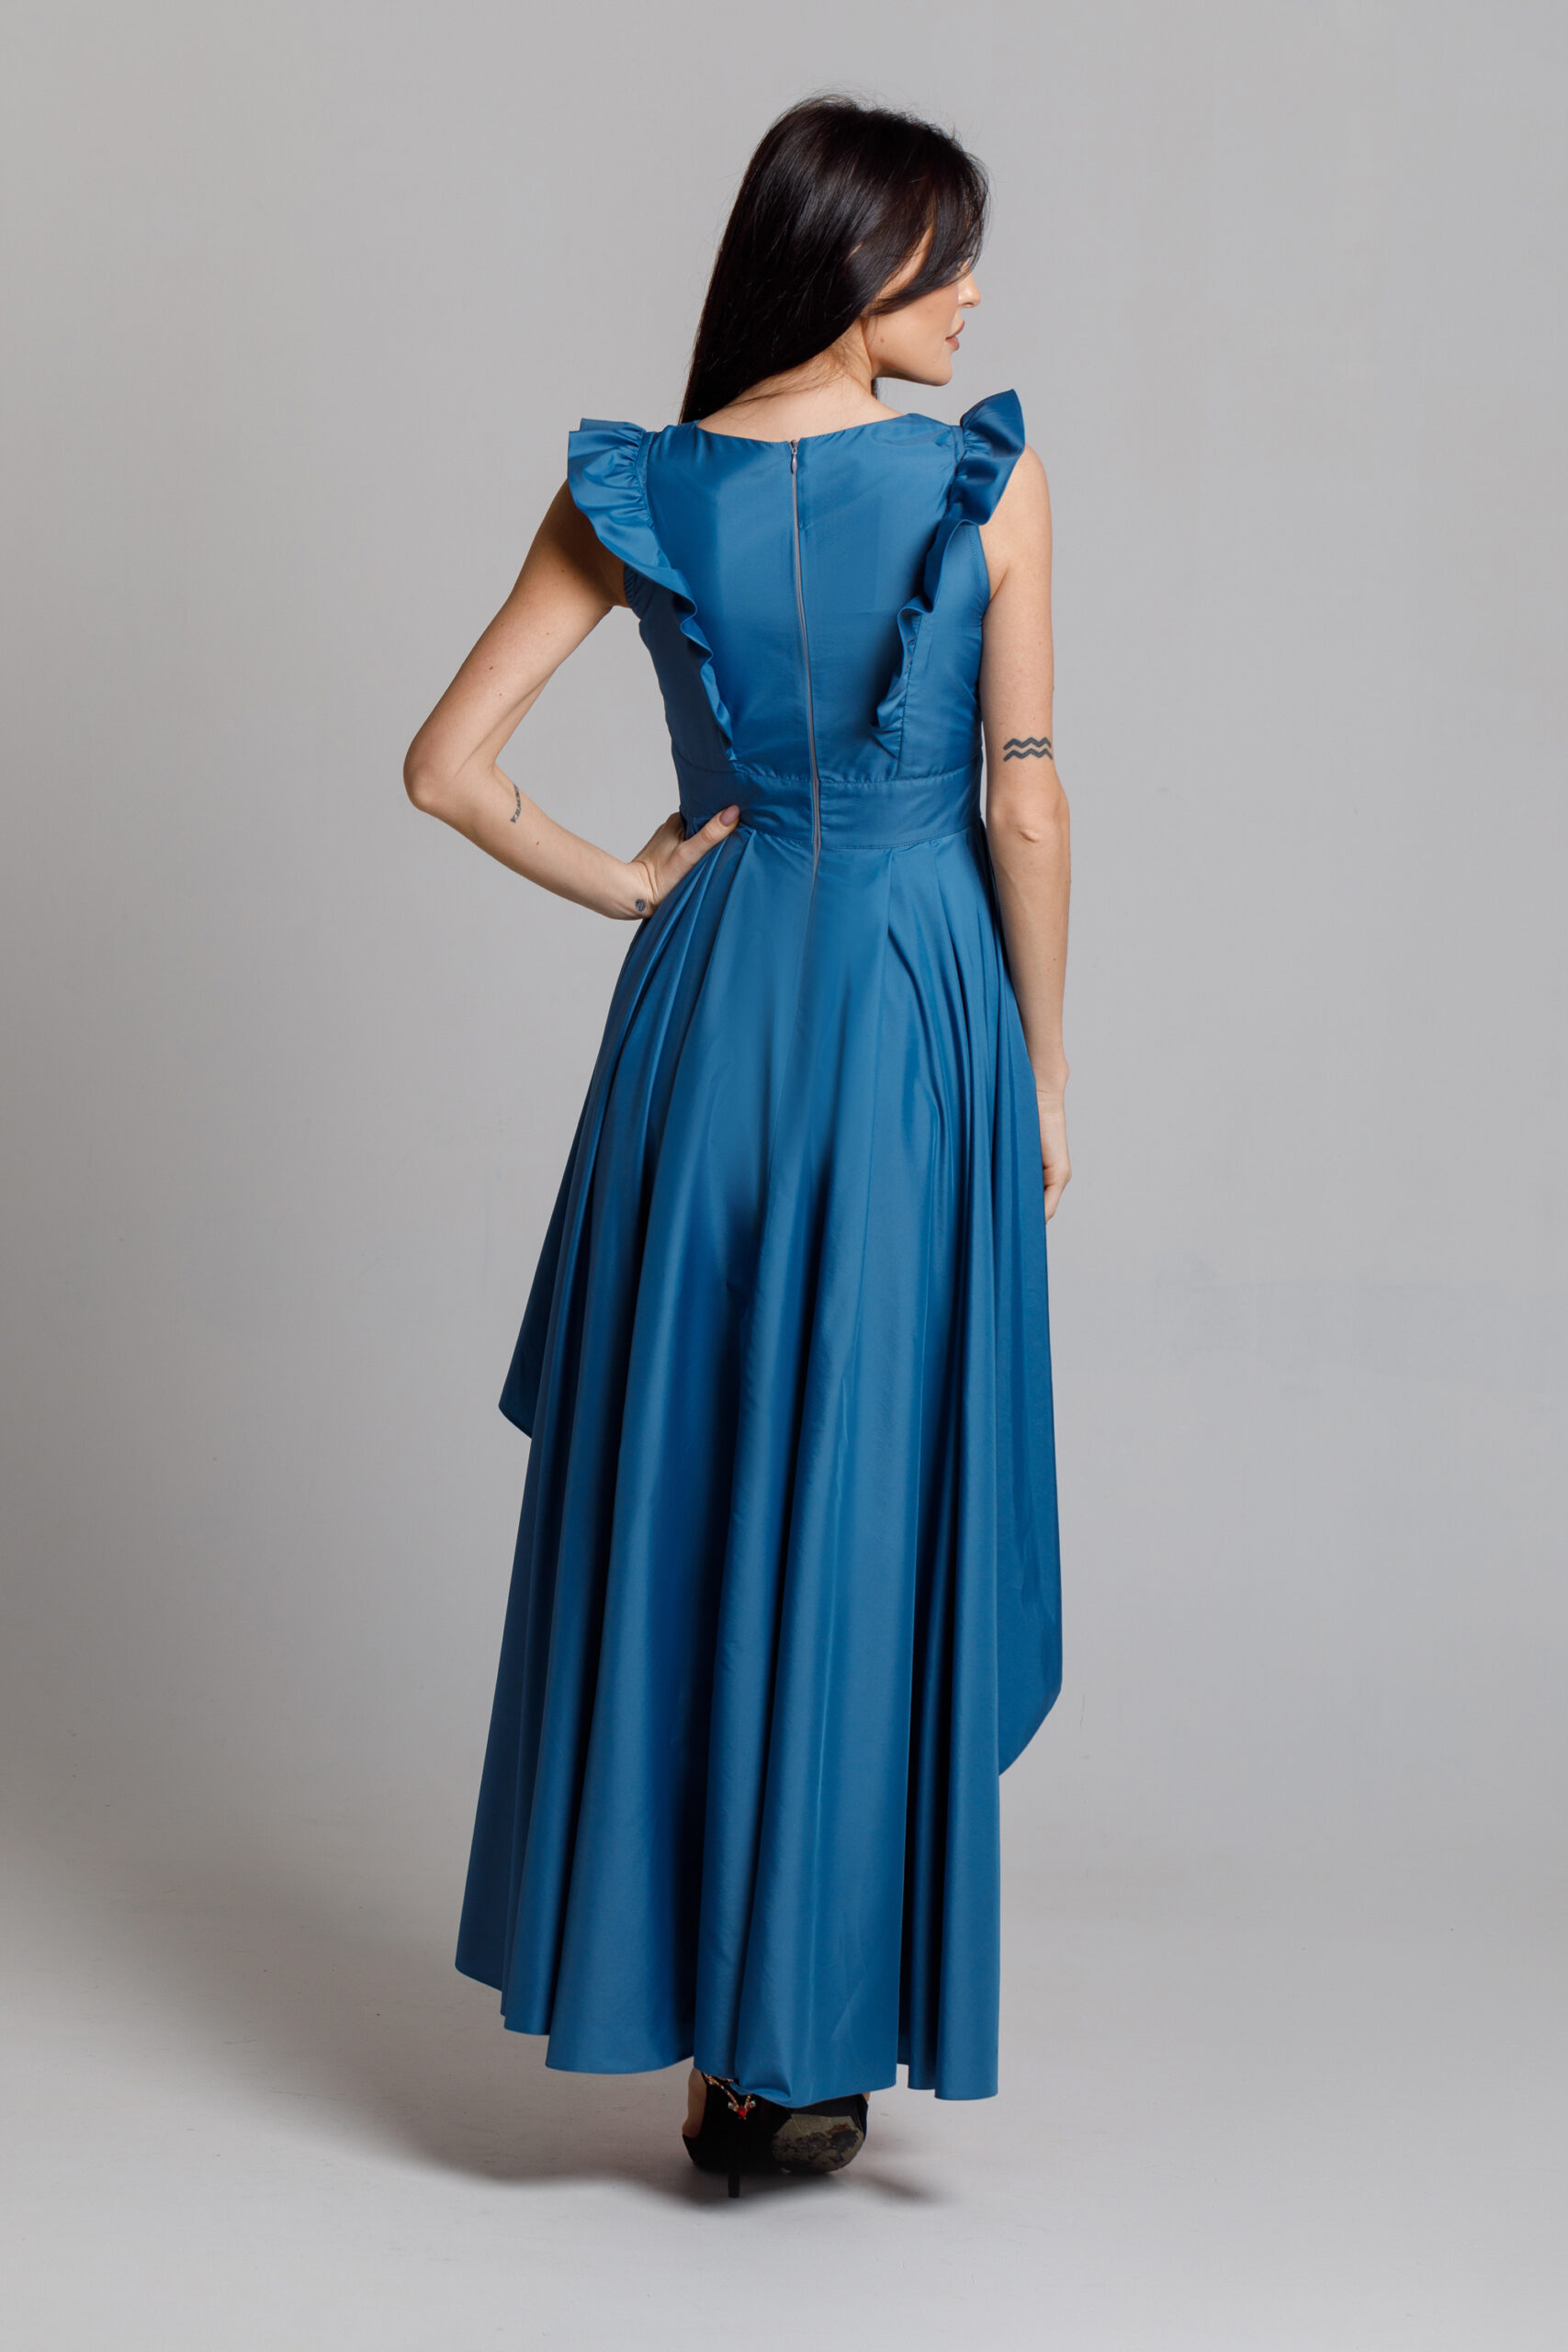 Elegant long blue ROSE dress. Natural fabrics, original design, handmade embroidery